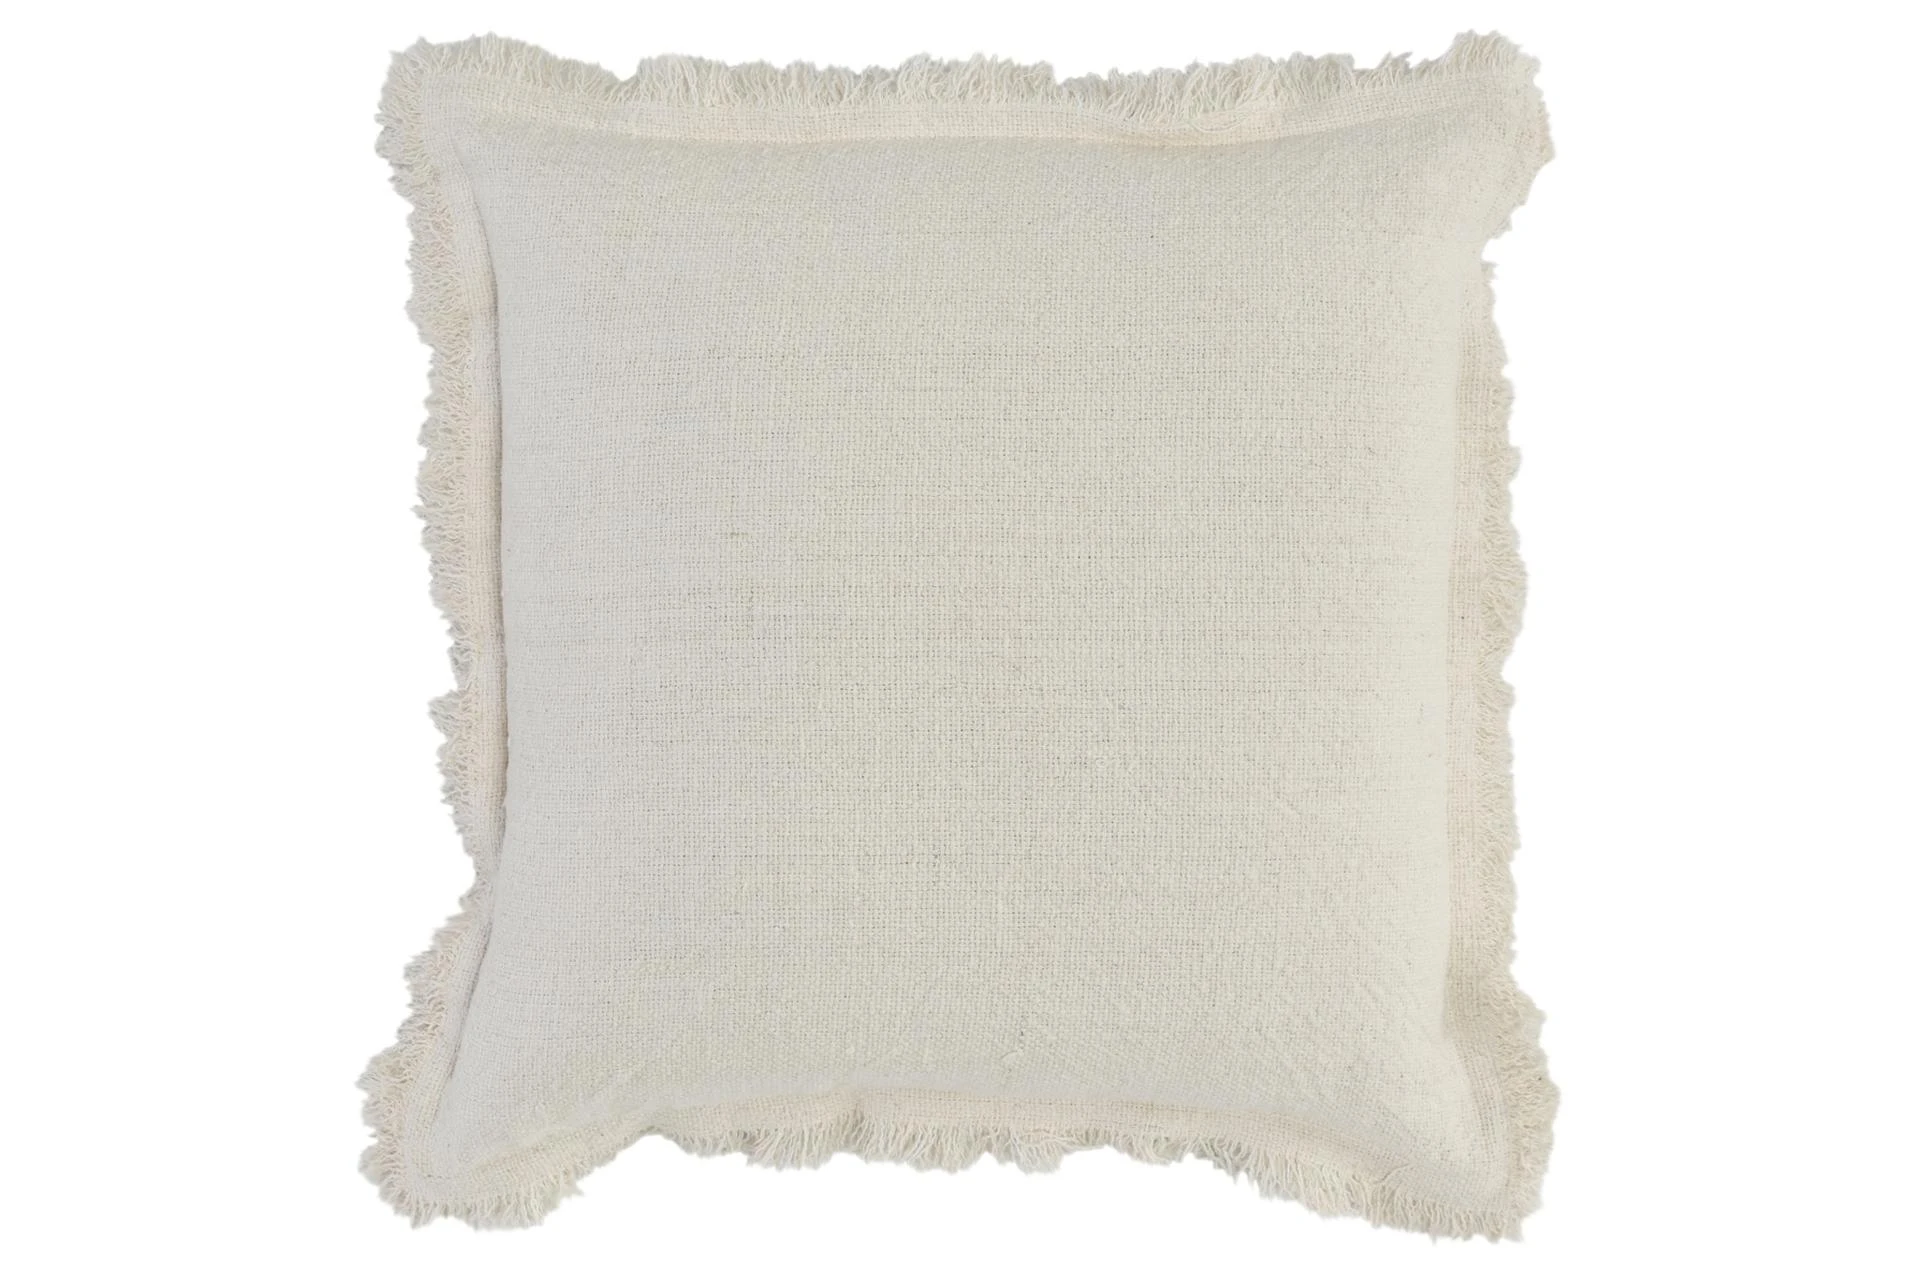 Accent Pillow - Ivory Linen + Cotton Fringe Edge 22X22